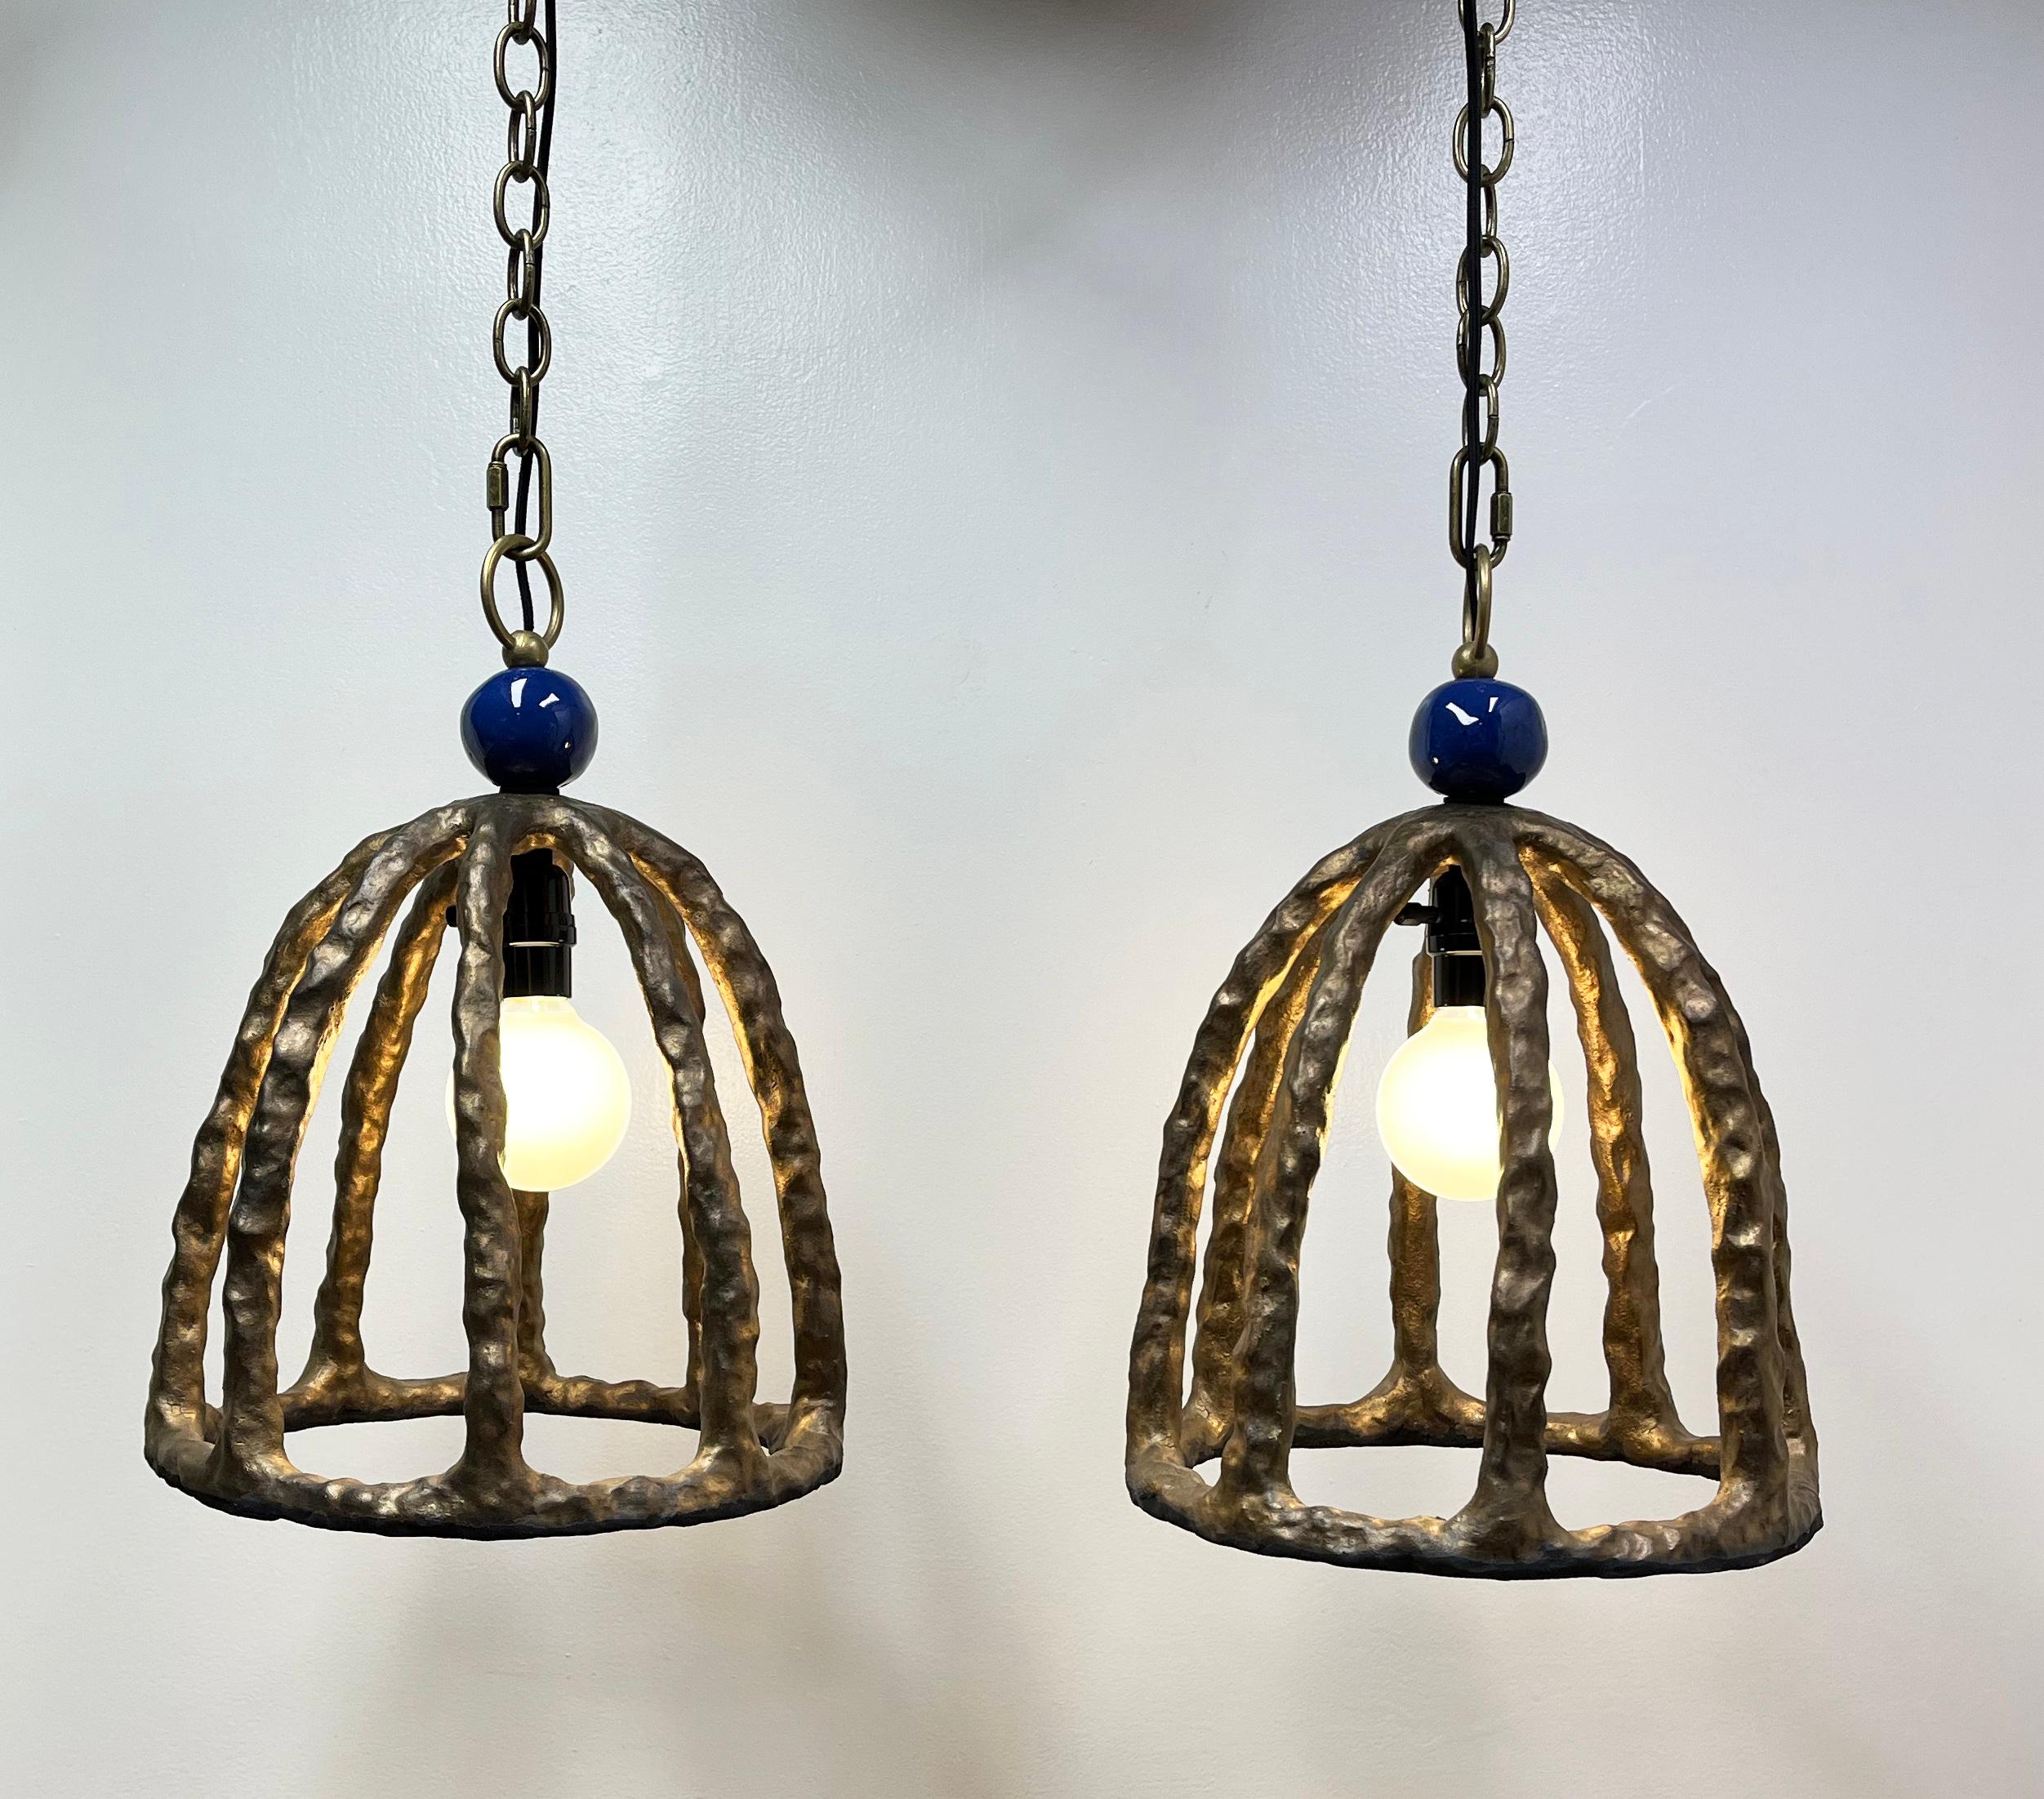 Paire de lampes pendantes en grès éclectique par Olivia Barry / By Hand